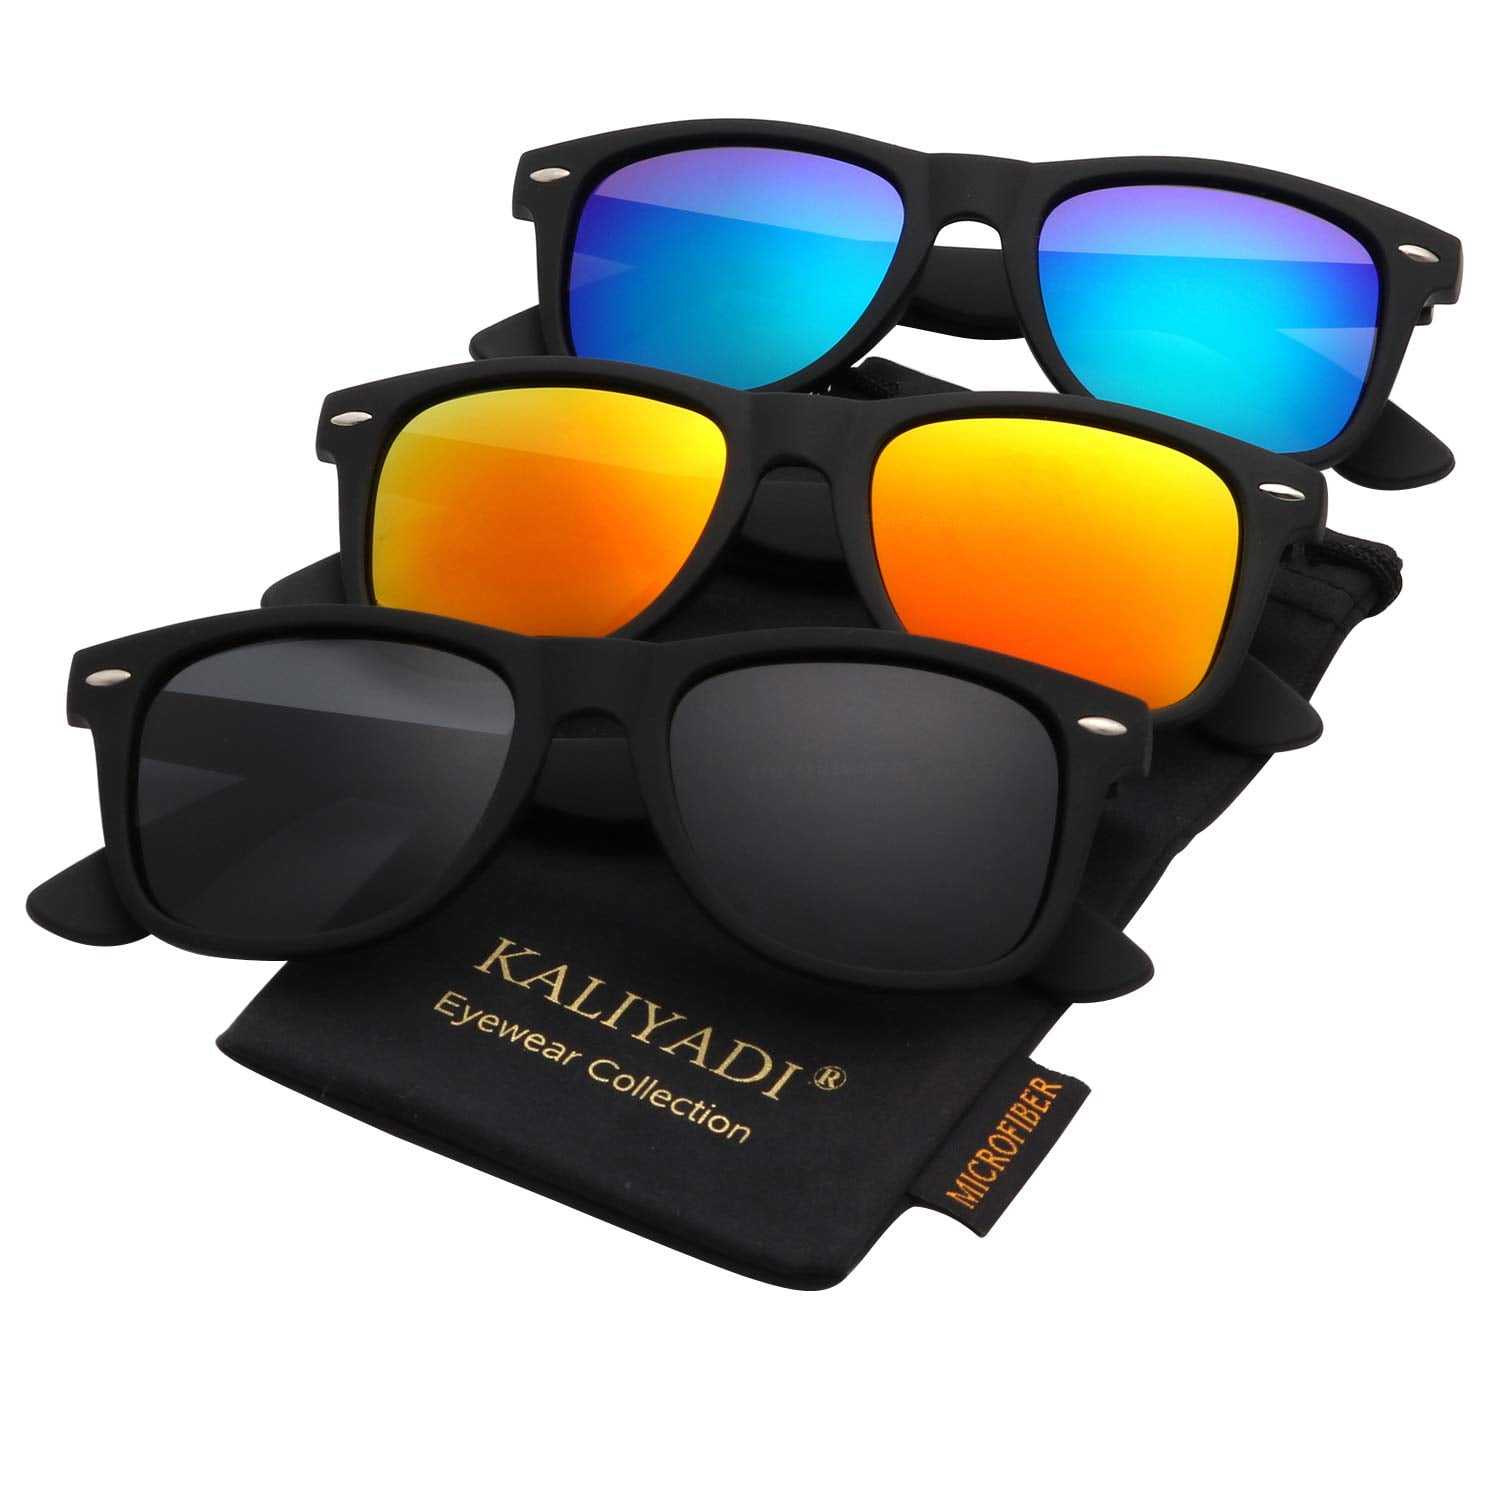 TOPBIGGER Sunglasses for Women Matte Finish Sun Glasses Color Mirror Lens 100% UV Blocking 